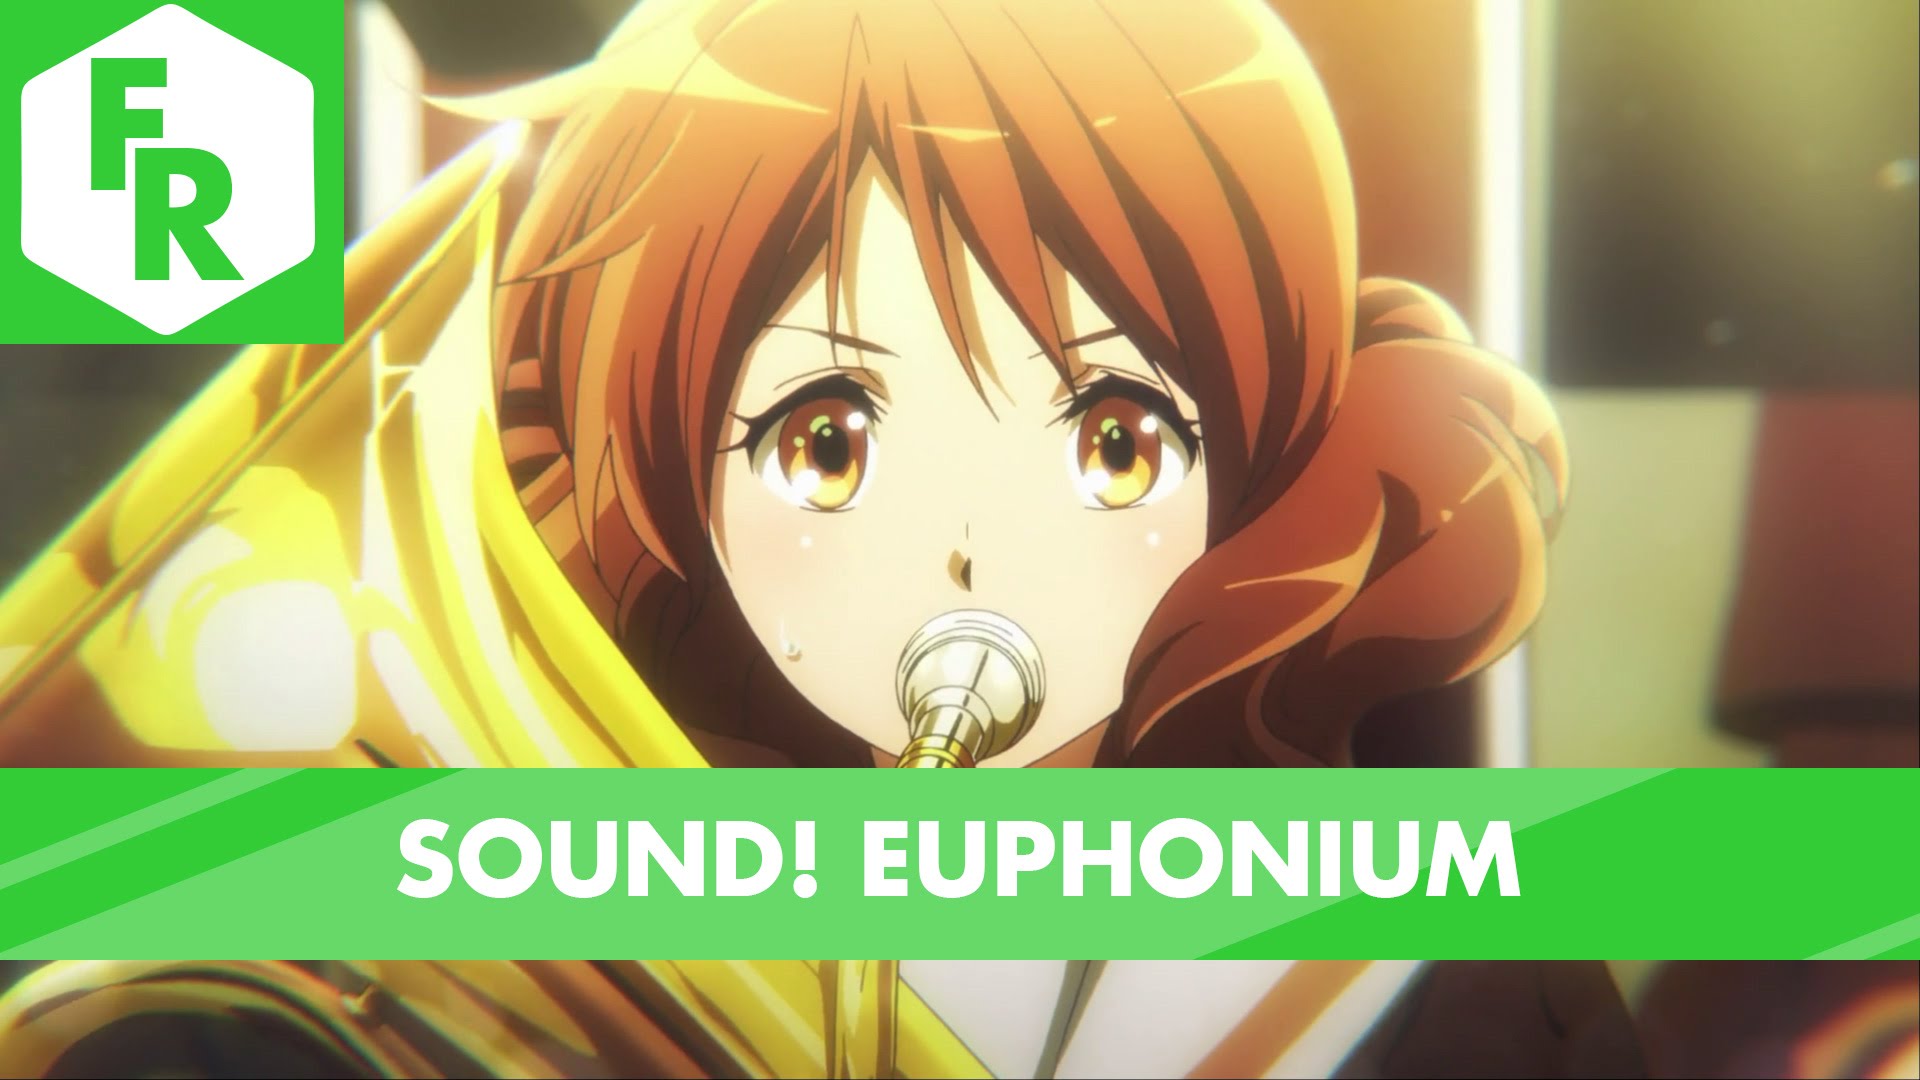 Sound! Euphonium Backgrounds, Compatible - PC, Mobile, Gadgets| 1920x1080 px